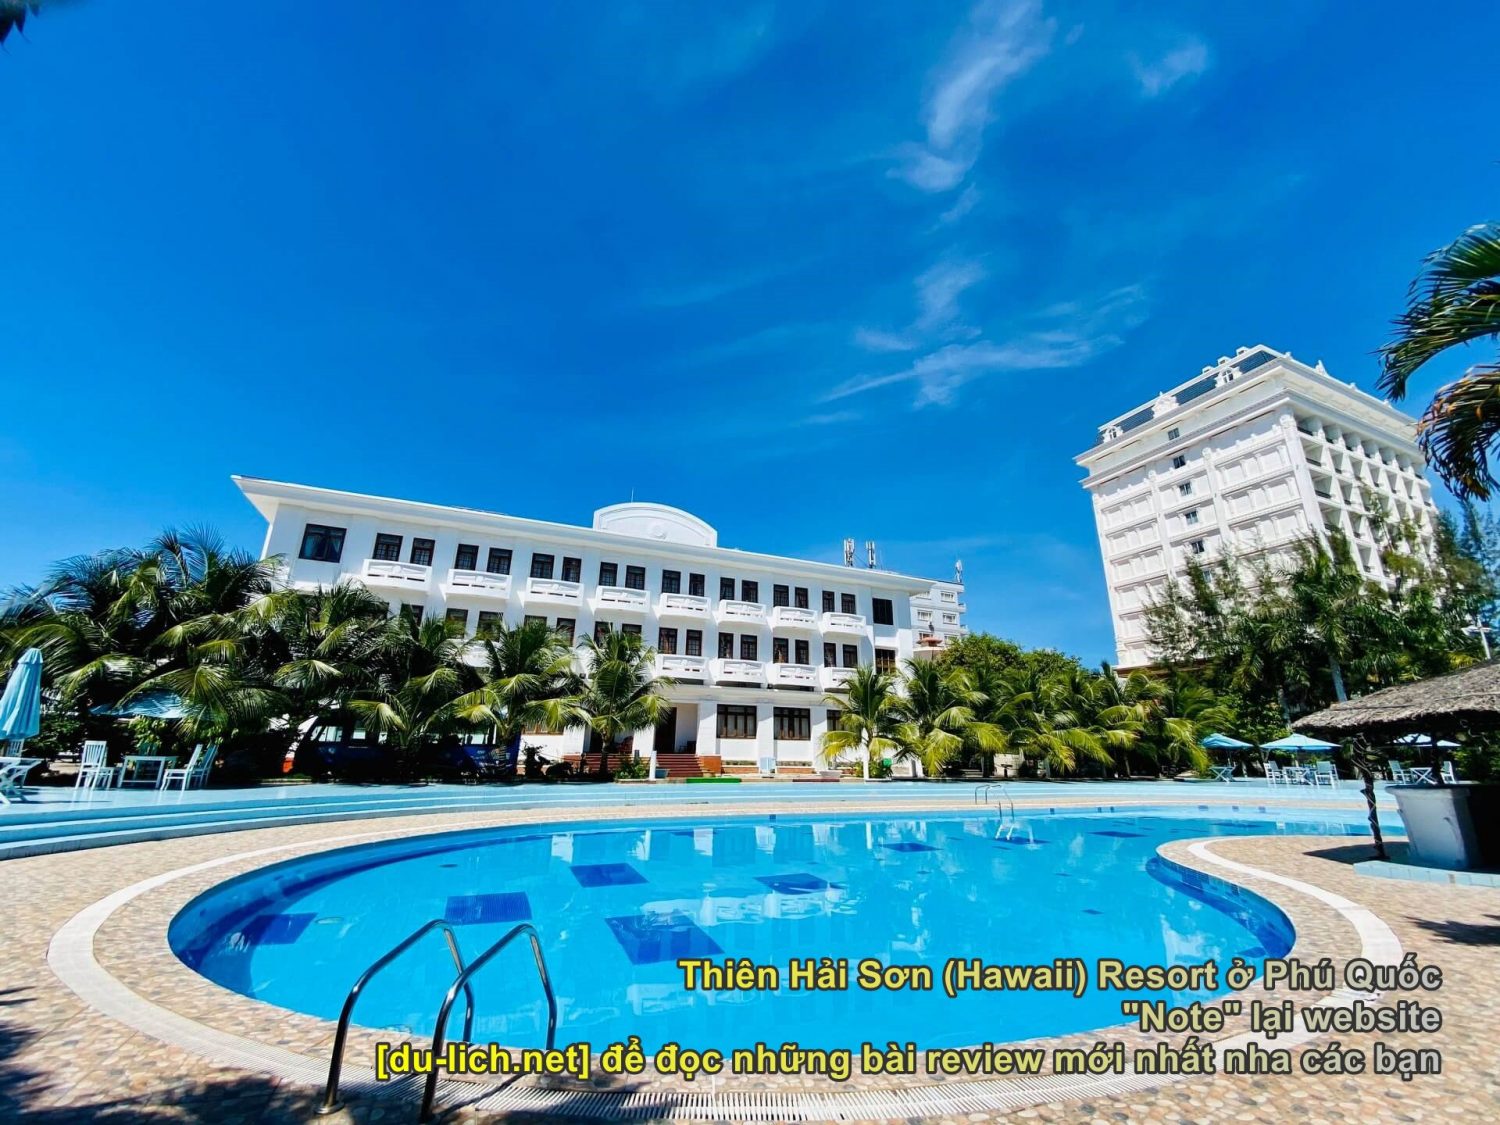 Toàn cảnh Thiên Hải Sơn Resort Phú Quốc